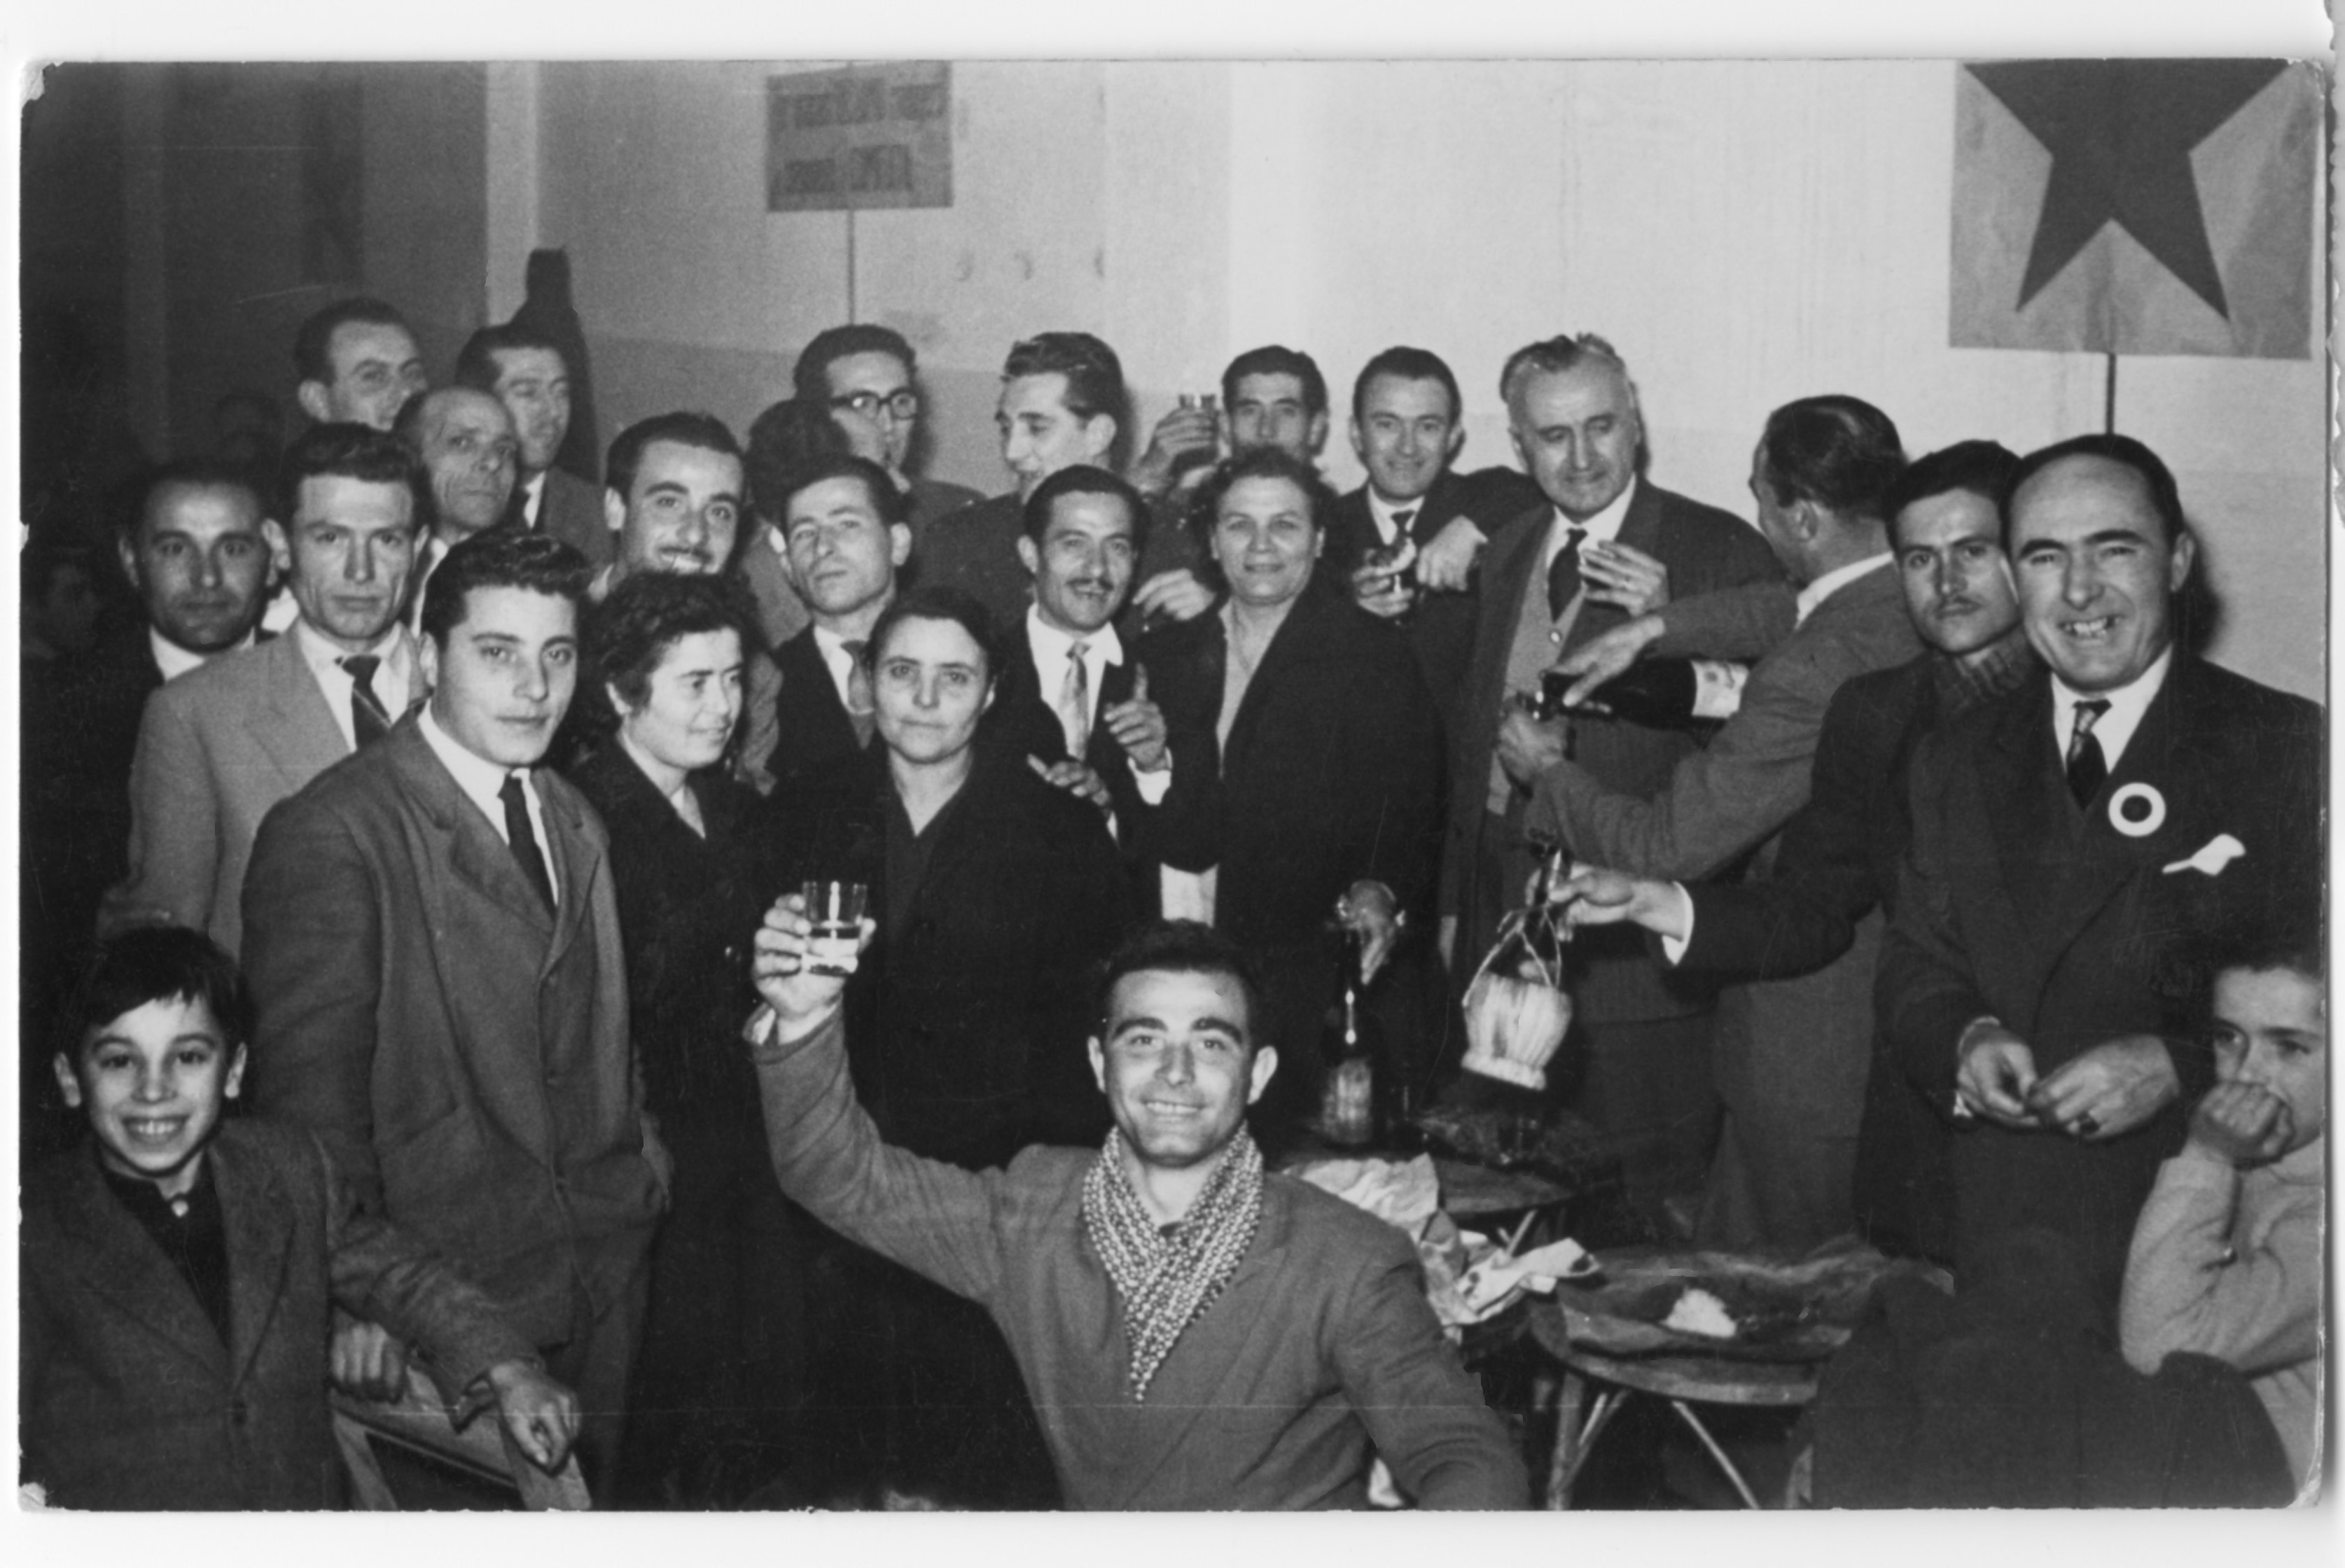 1954 ca. Cattolica. Festa della Stella Rossa. 5. da destra Giuseppe Ricci. Al centro in alto Mario Soldati. Alla sua sin. Francesco Alici (con gli occhiali)